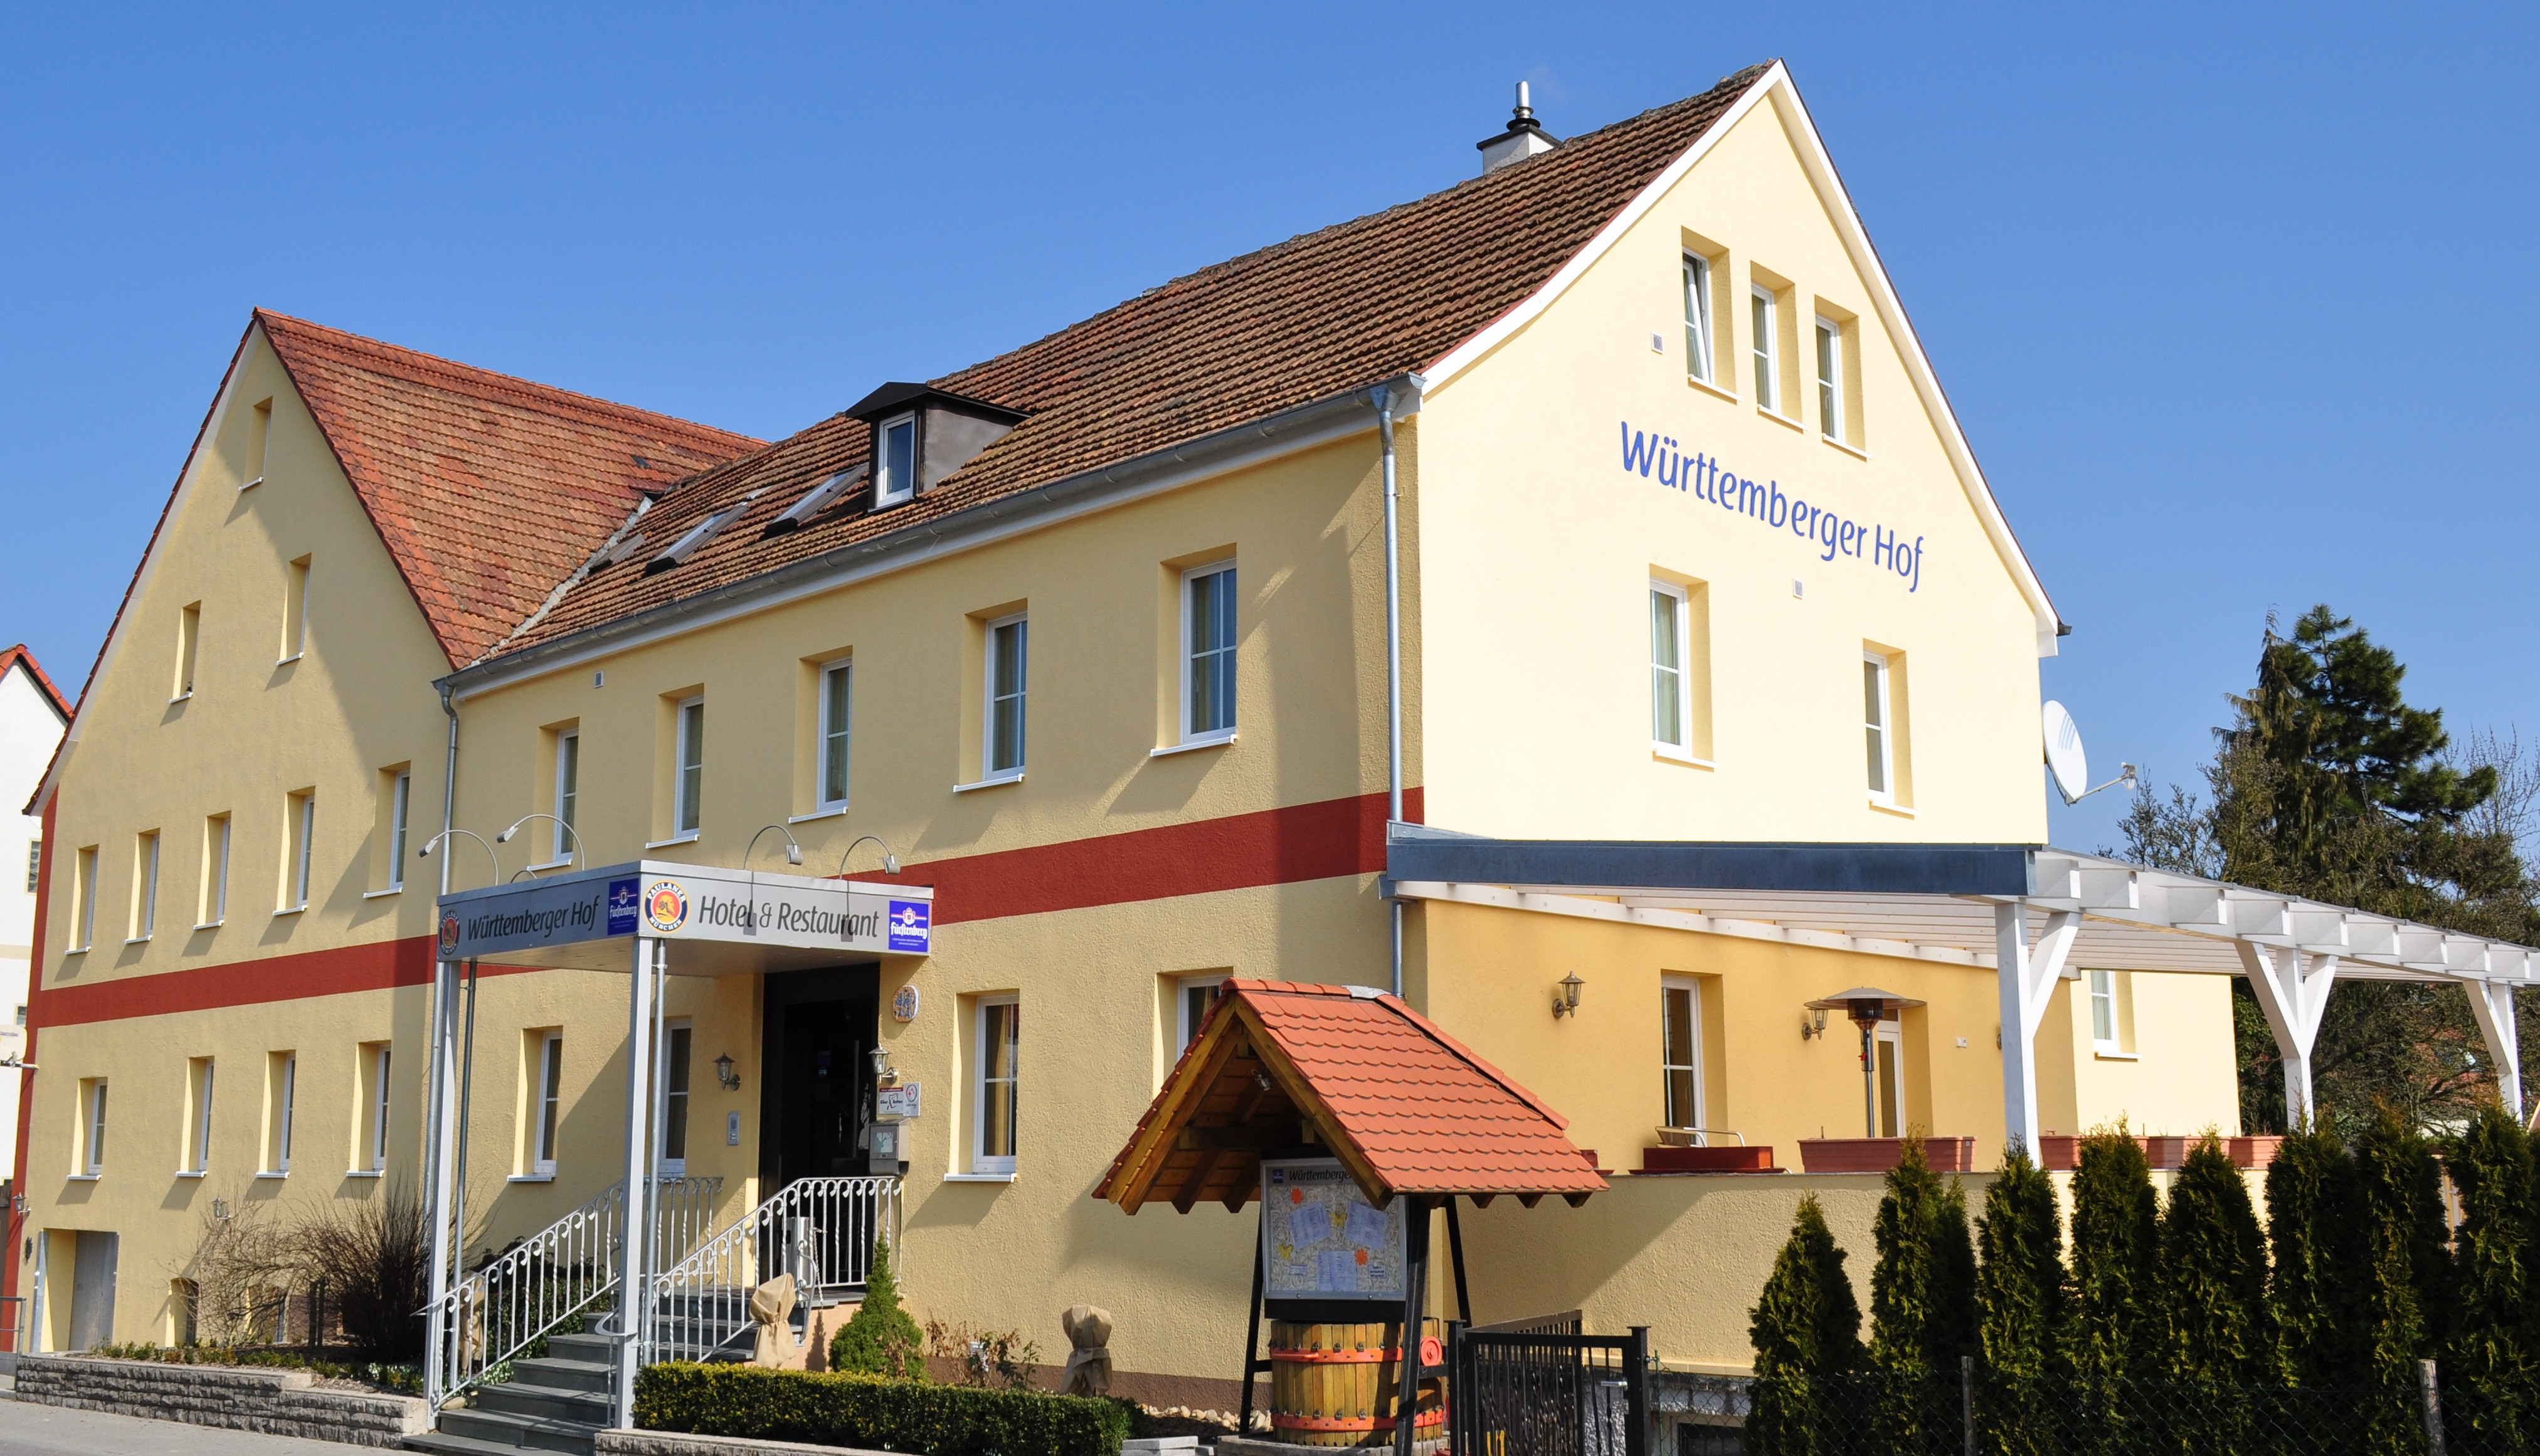 Hotel und Restaurant Württemberger Hof